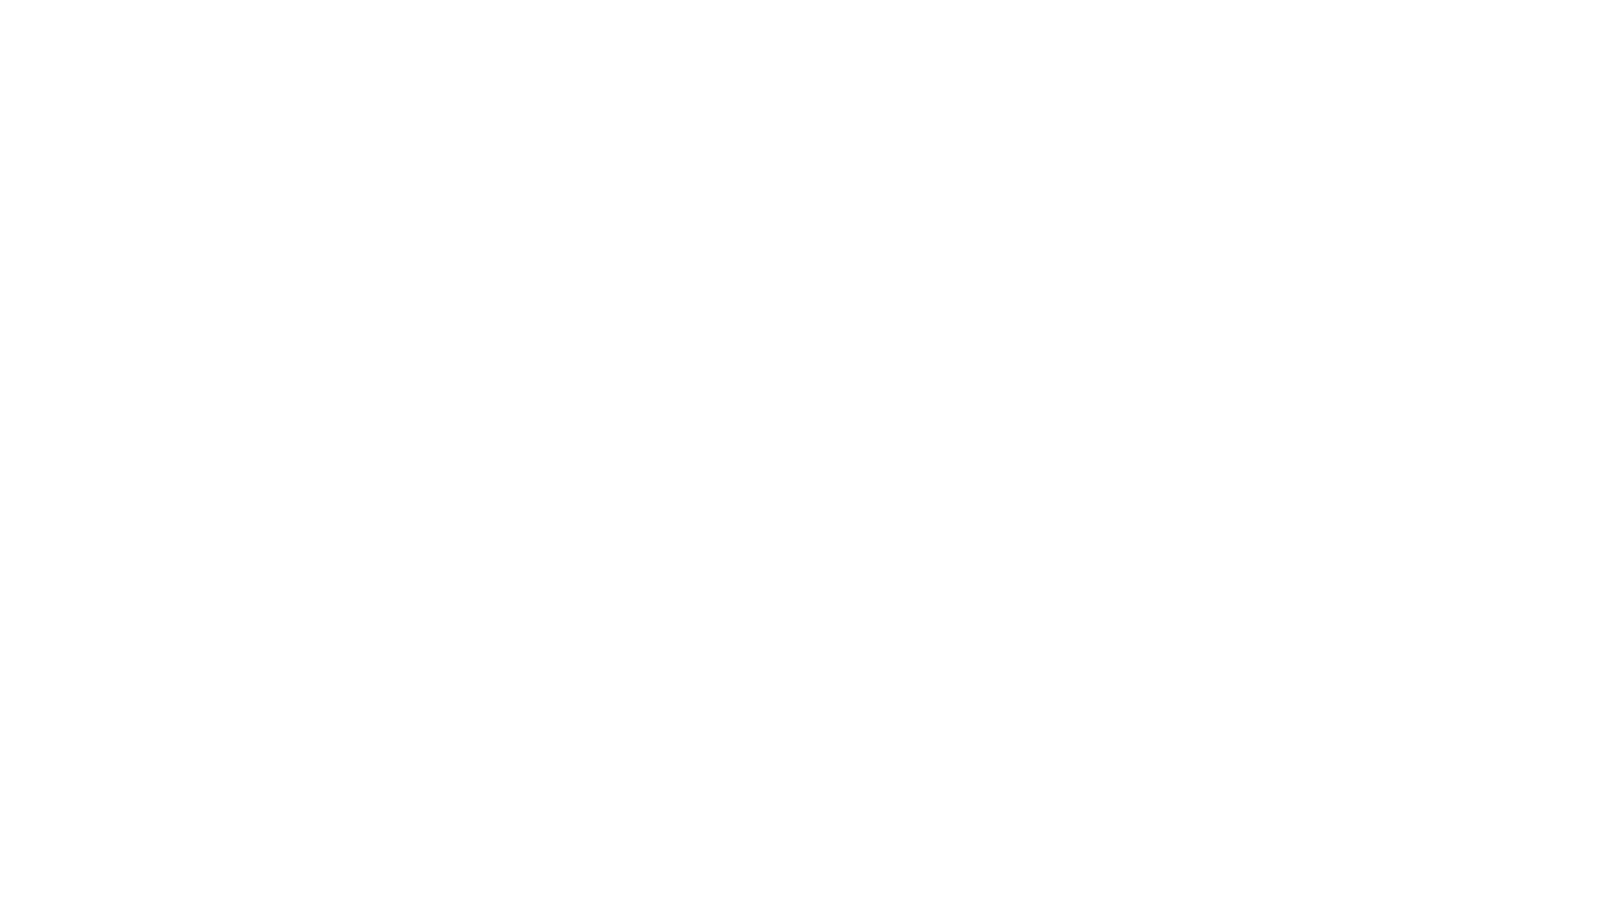 বিষয় : অটিজম এর হোমিওপ্যাথিক চিকিৎসা পদ্ধতির মূল বিষয়বস্তু, চিকিৎসার সফলতা, মূল্যায়ন এবং বাস্তবতা প্রসঙ্গ। বিশ্বের বিভিন্ন দেশ থেকে অটিজম গবেষক জাহাঙ্গীরের কাছে অটিজম চিকিৎসা নেয়া শিশুর পিতা-মাতার বাস্তব অভিজ্ঞতা ও মূল্যায়ন।
UsaNewsOnline Journal: Usanewsonline.Com:
অতিথি : মোহাম্মদ জাহাঙ্গীর, অটিজম গবেষক, হোমিওপ্যাথ কনসালটেন্ট, এনএসএফএ গ্লোবাল, অন্টারিও, কানাডা। ফোন: ৪১৬-৫৮০-০৩৭৭।
অটিজম চিকিৎসা নেয়া শিশুর পিতা-মাতা : নাজনীন আক্তার (চিকিৎসাধীন শিশু ছেলের মা), সিডনি অস্ট্রেলিয়া; কায়সার (চিকিৎসারত শিশু ছেলের বাবা-মা), ঢাকা, বাংলাদেশ: গোলাম হাসান (চিকিৎসাধীন শিশু ছেলের বাবা), নিউজার্সি, যুক্তরাষ্ট্র এবং আফসানা রতœা ও রিয়াজুল সিকদার (চিকিৎসাধীন শিশু ছেলের মা-বাবা), বরিশাল, বাংলাদেশ।
উপস্থাপক : সাখাওয়াত হোসেন সেলিম, সম্পাদক, ইউএসএনিউজঅনলাইন.কম এবং প্রধান সম্পাদক, নিউজ২৪ইউএসএ.কম, নিউইয়র্ক, যুক্তরাষ্ট্র।
Topic: Basic content of homeopathic treatment of autism, treatment success, evaluation and reality context. Real experience and evaluation of parents of children who received autism treatment from autism researcher Mohammad Jahangir from different countries of the world.
UsaNewsOnline Journal : Usanewsonline.Com, Facebook:  
 / usanewsny   ; Episode : 895 : 05-2024: Host : Shakhawat Hossain Salim, Editor, Usanewsonline.Com : Guest: Mohammad Jahangir, Consultant Homeopath & Autism Specialist; [BE (BUET), MBA (Middlesex. UK), CCP (USA), PMP (USA), Dip. In Pathology & Diseases (SOH, Glocest. UK), DIP-Nutrition (UK), Dip in Anatomy (UK), BCH (SC, RC), CCHM, Canada, CBH (Australia), Registered Homeopath, NSFA Global, Ontario, Canada. (Mohammad Jahangir + 1 416-580-0377)
Parents of children treated for autism: Nazneen Akhtar (mother of treated child), Sydney Australia; Kaiser (Parent of Treated Child), Dhaka, Bangladesh: Golam Hasan (Father of Treated Child), New Jersey, USA and Afsana Ratna and Riazul Sikder (Parent of Treated Child), Barisal, Bangladesh.
Presenter: Shakhawat Hossain Salim, Editor, USANewsOnline.com and Editor-in-Chief, News24USA.com, New York, USA.
To Watch USANewsOnline Live Please Visit:  

 / usanewsny   Youtube :   

 / usanewsonline   Twitter@usanewsonline1
স্পন্সর: কর্ণফুলী ট্যাক্স সার্ভিসেস ইনক, নিউইয়র্ক, যুক্তরাষ্ট্র। ফোন:৭১৮-২০৫-৬০৪০;  www.karnafullytax.com
Please Visit for Latest News:  https://www.youtube.com/my_videos?ar=...
#autismawareness #autism #homeopathyPlease Visit for Latest News:  https://www.youtube.com/my_videos?ar=...
#Usanewsonline​​​​​​​​​​​​​​​​​​​​​​​​​​​​​​​​​​​​​​​​.Com #Usanewsonline​​​​​​​​​​​​​​​​​​​​​​​​​​​​​​​​​​​​​​​​ #UsaNewsOnline​​​​​​​​​​​​​​​​​​​​​​​​​​​​​​​​​​​​​​​​ Journal #USANewsNY​​​​​​​​​​​​​​​​​​​​​​​​​​​​​​​​​​​​​​​​ #bangla​​​​​​​​​​​​​​​​​​​​​​​​​​​​​​​​​​​​​​​​ talk show #News24USA #Bangladesh #Bengali #NewYork #News #representation #Autism #treatment #autismawareness #autism #Bangladesh